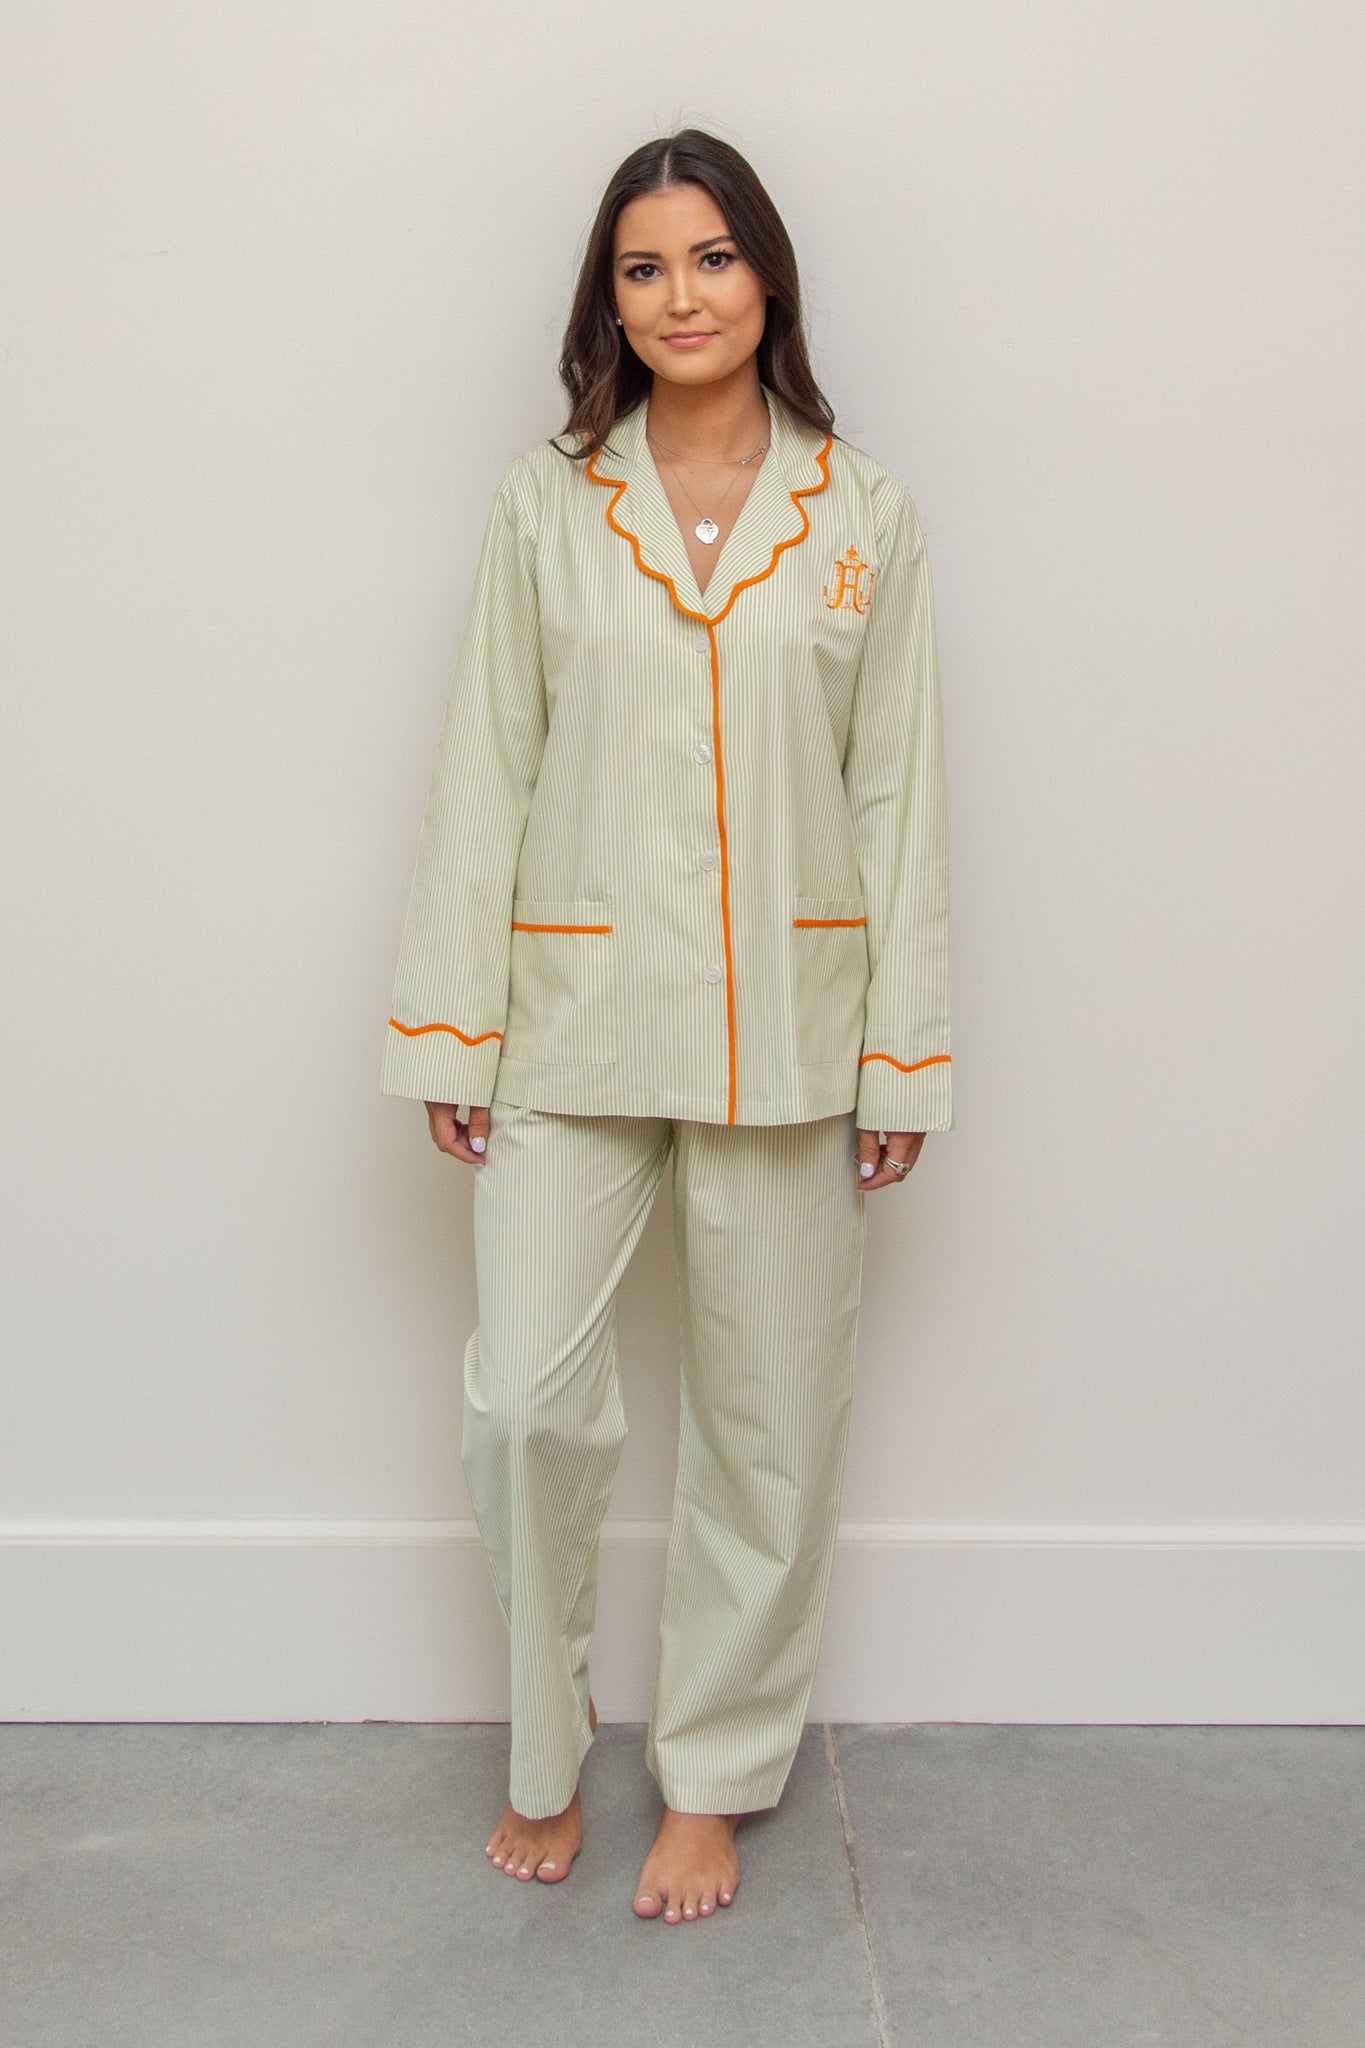 monogram pajamas set